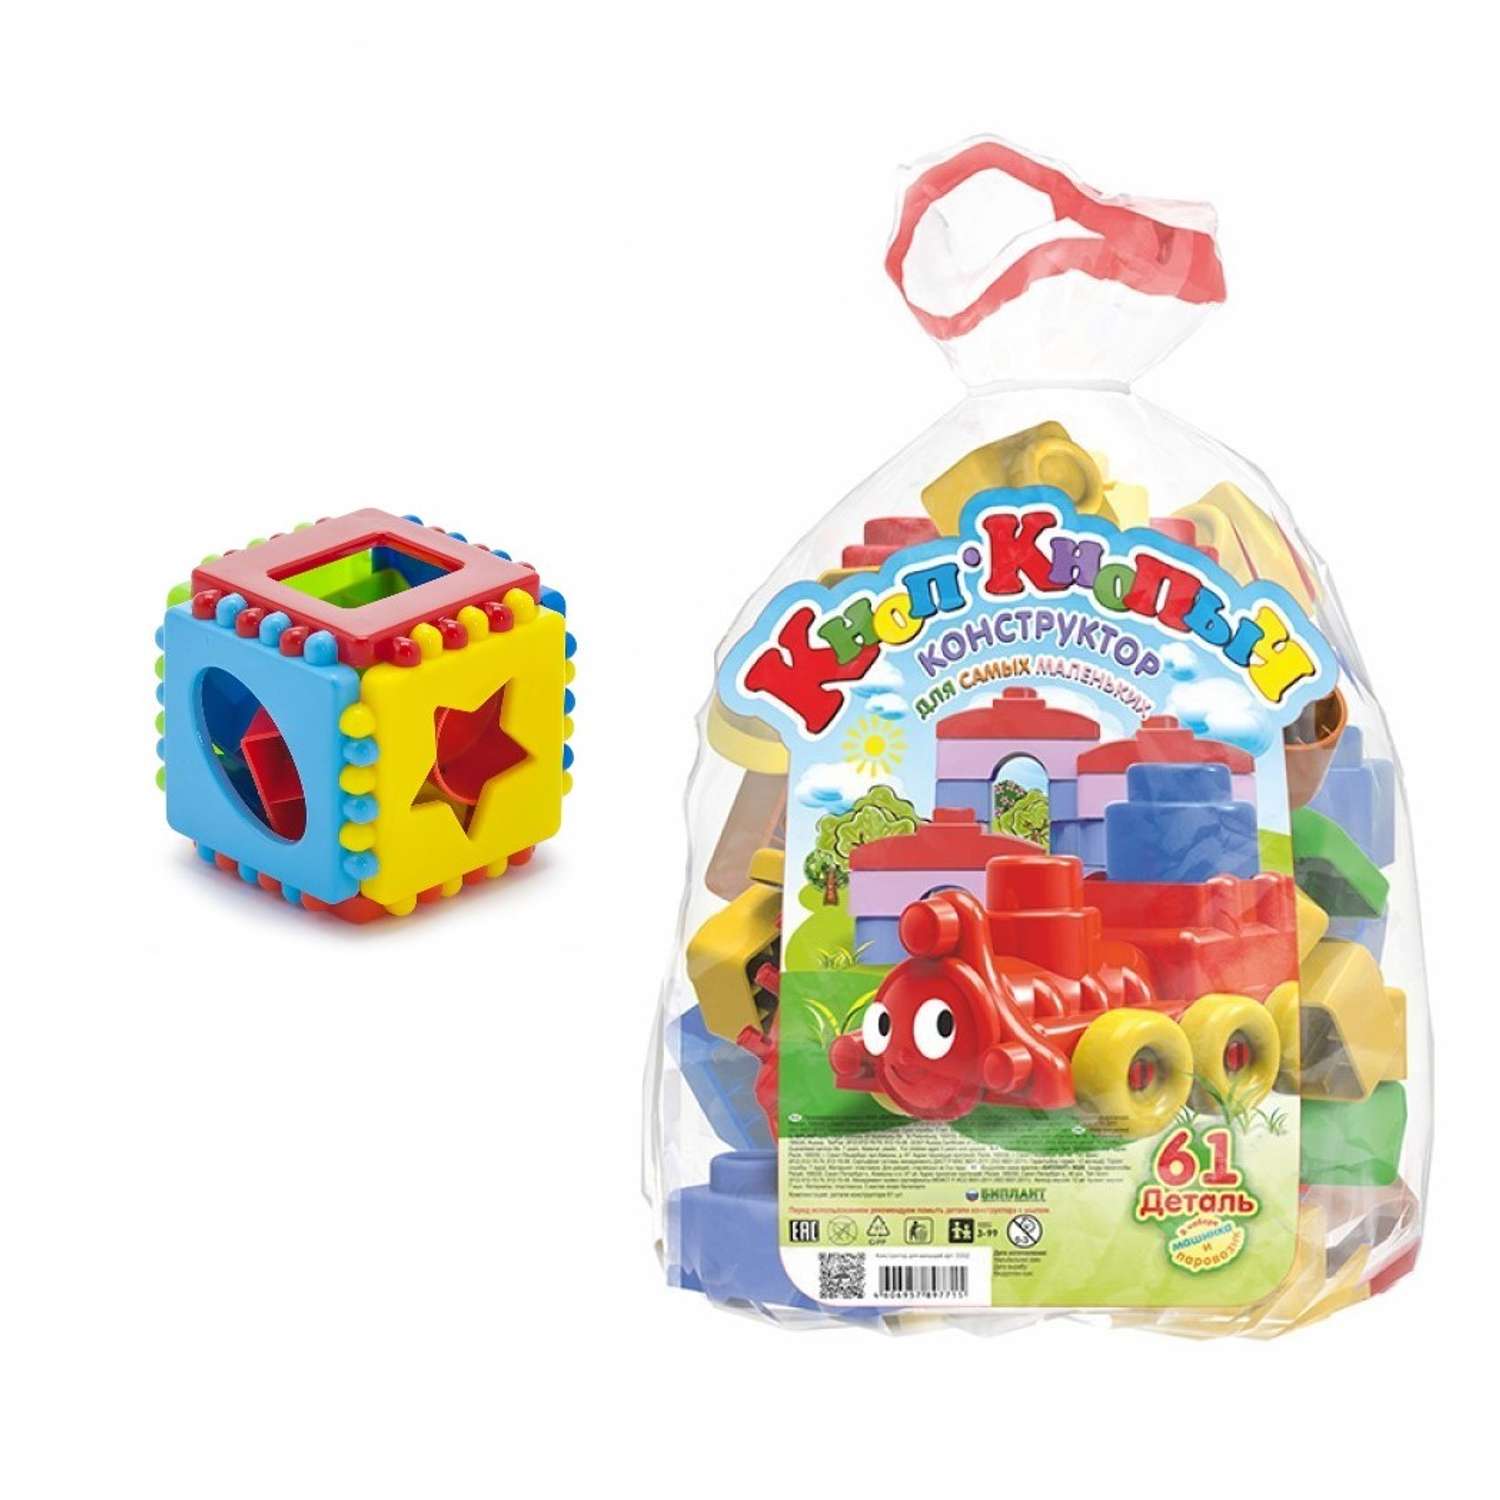 Развивающие игрушки БИПЛАНТ для малышей конструктор Кноп-Кнопыч 61 деталь + Сортер кубик логический малый - фото 1